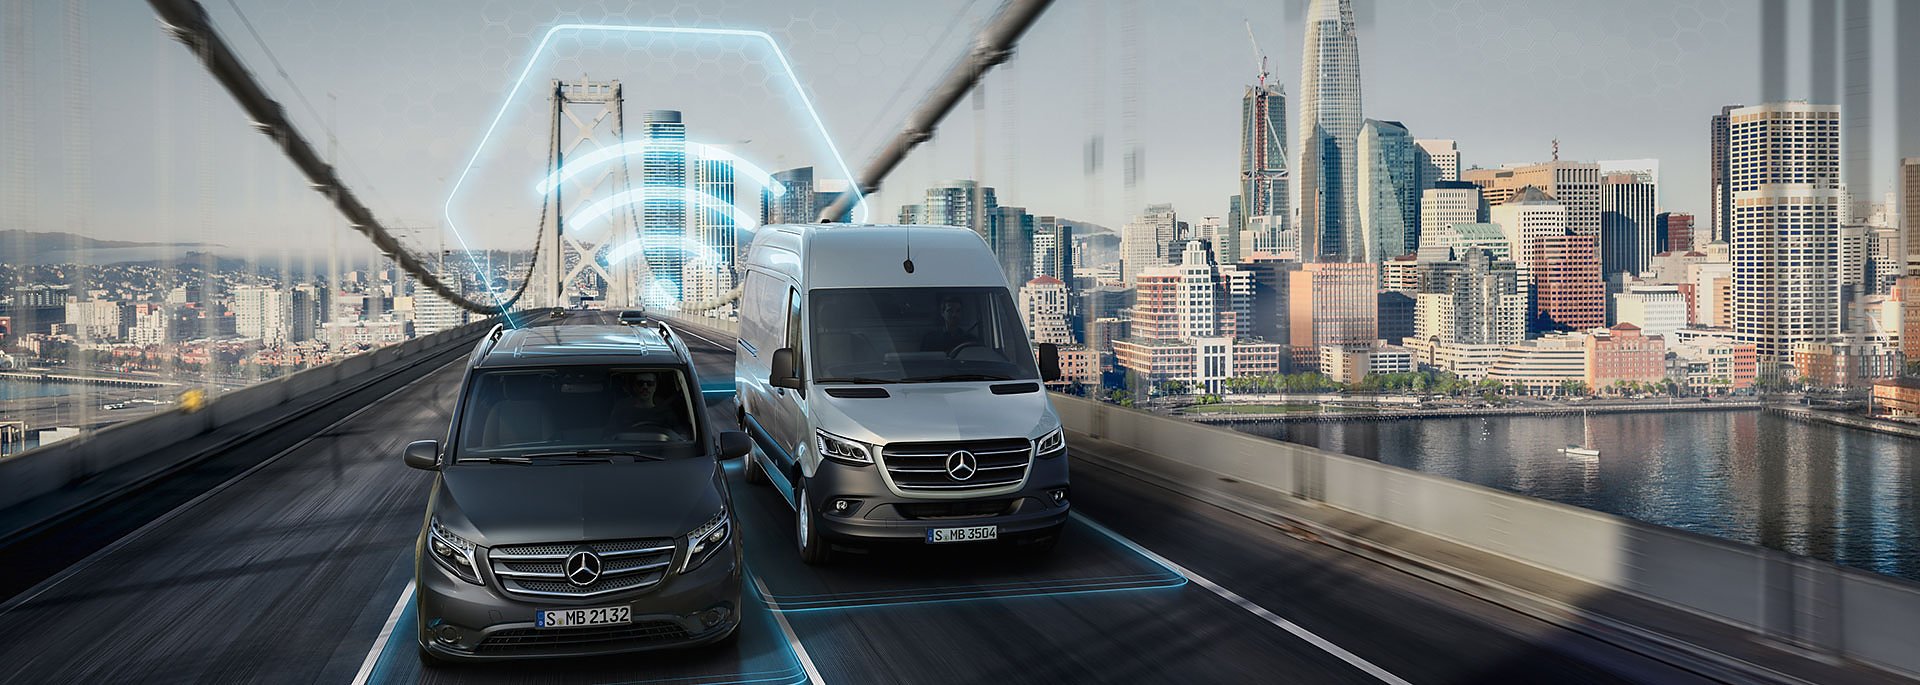 Neue digitale Dienste bei Mercedes PRO connect